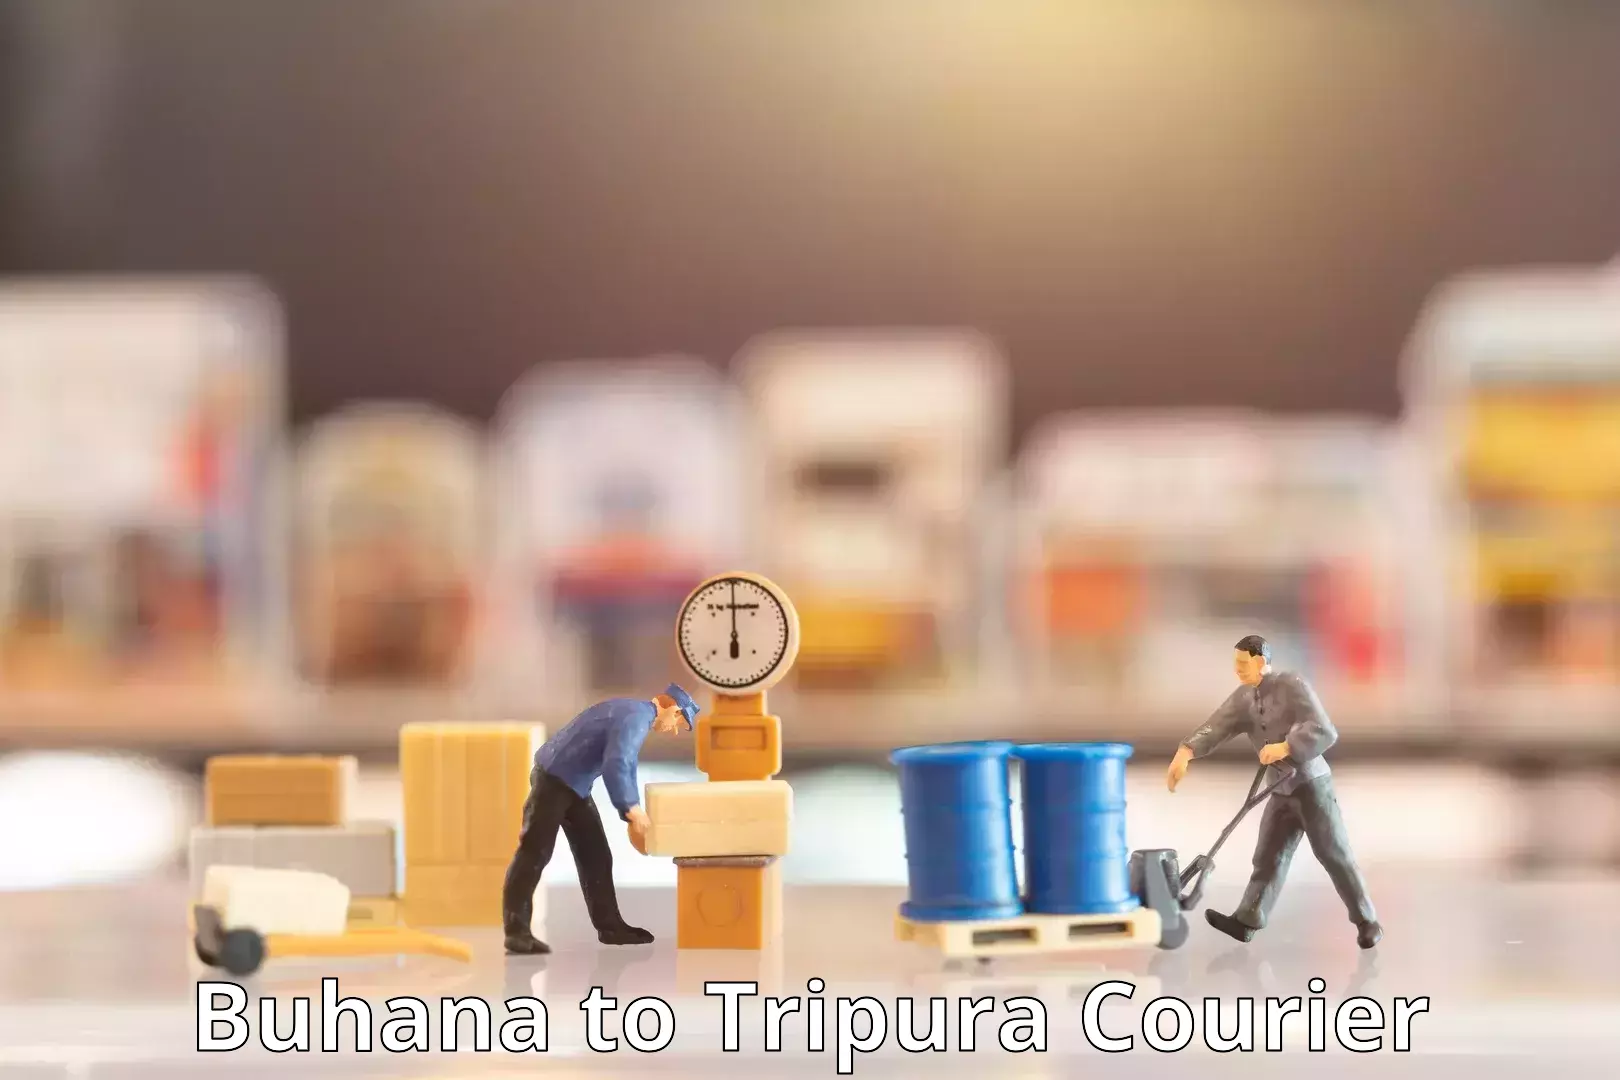 Courier service innovation Buhana to Kailashahar